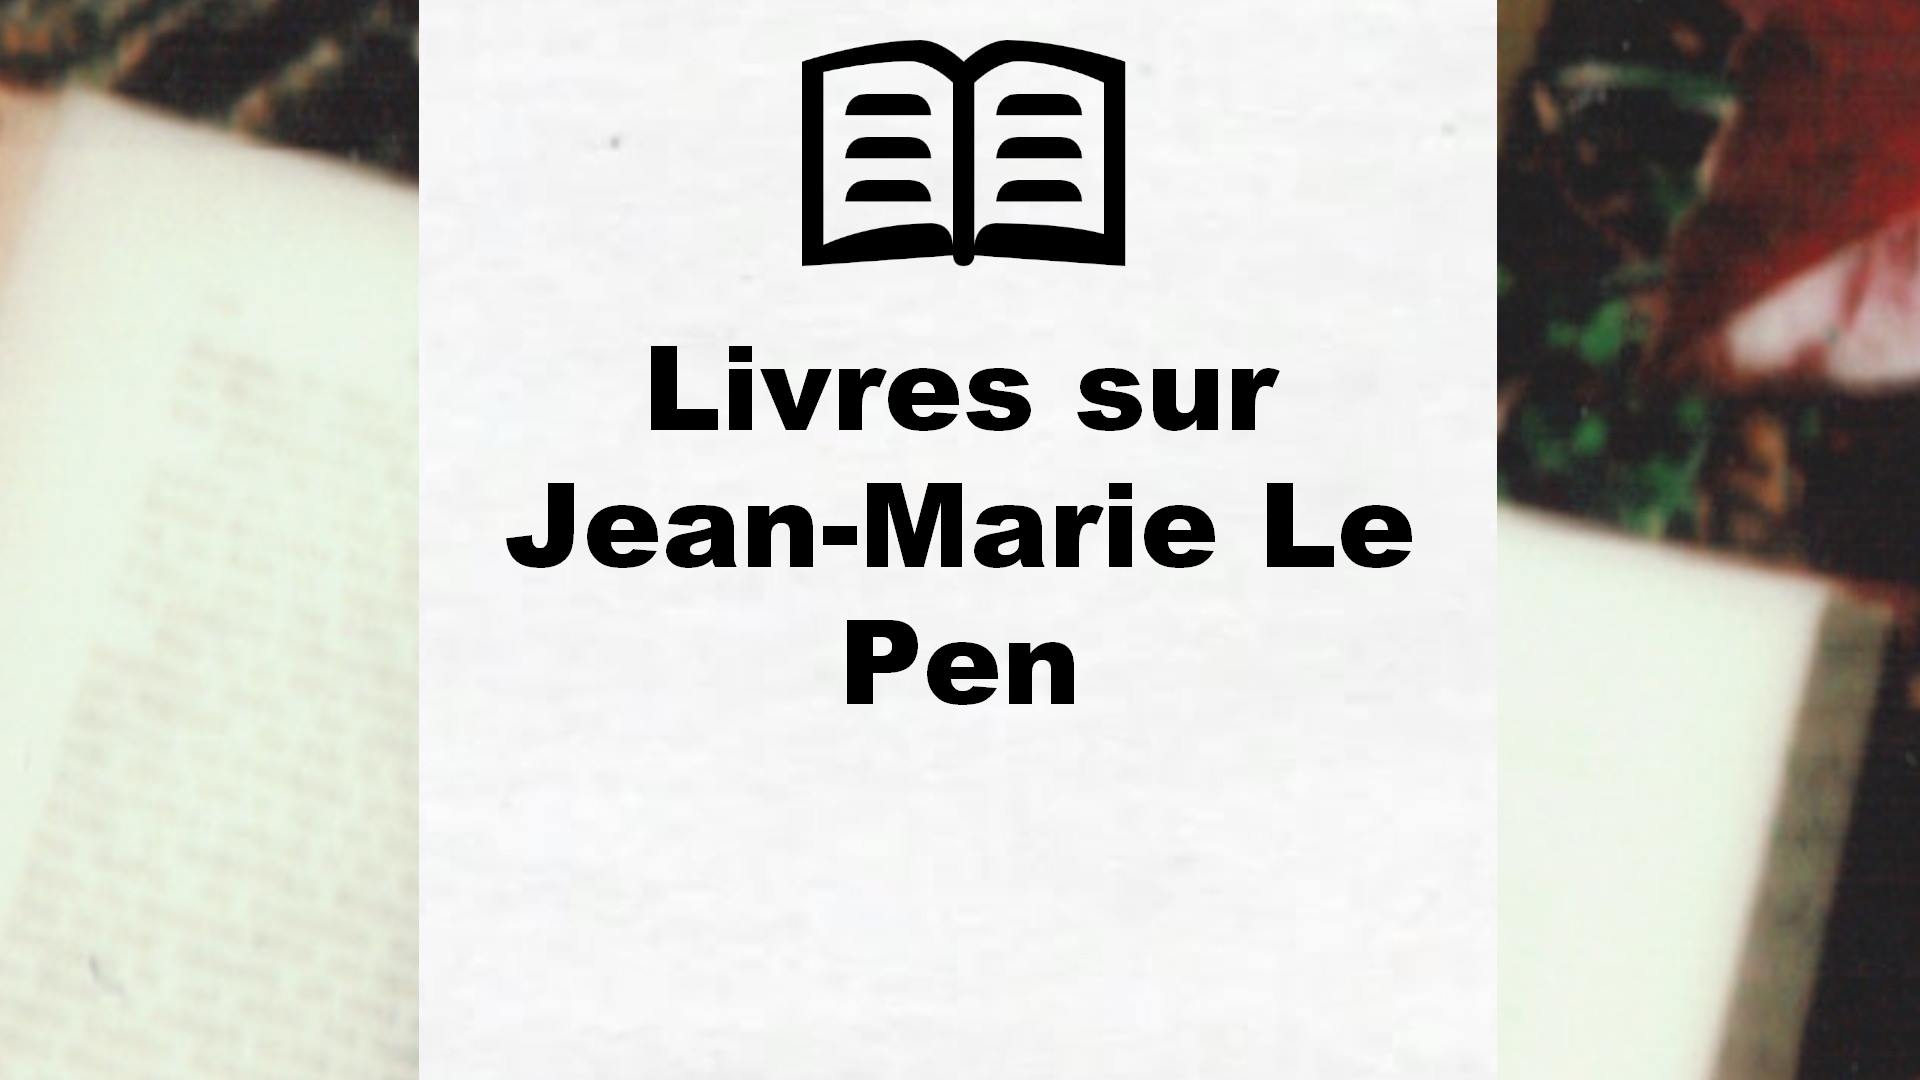 Livres sur Jean-Marie Le Pen